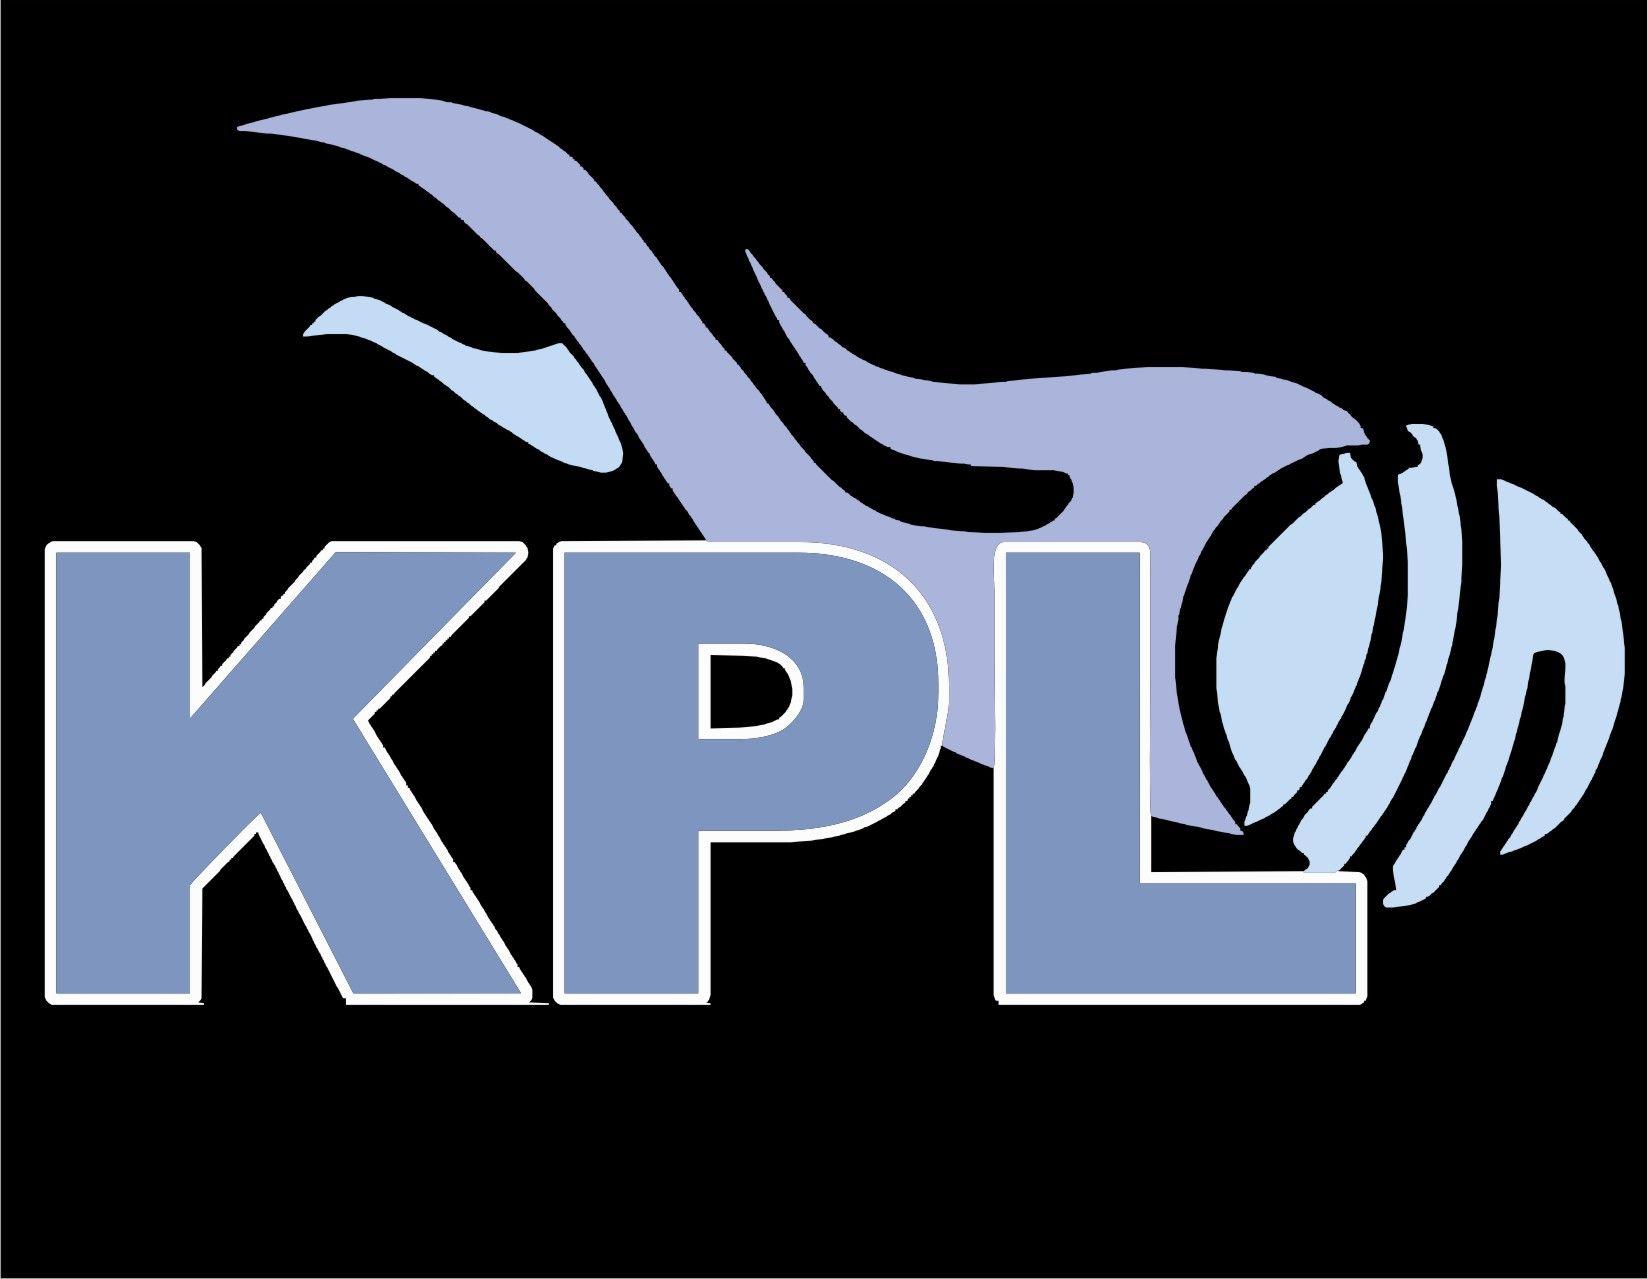 KPL Logo - Kpl Logos